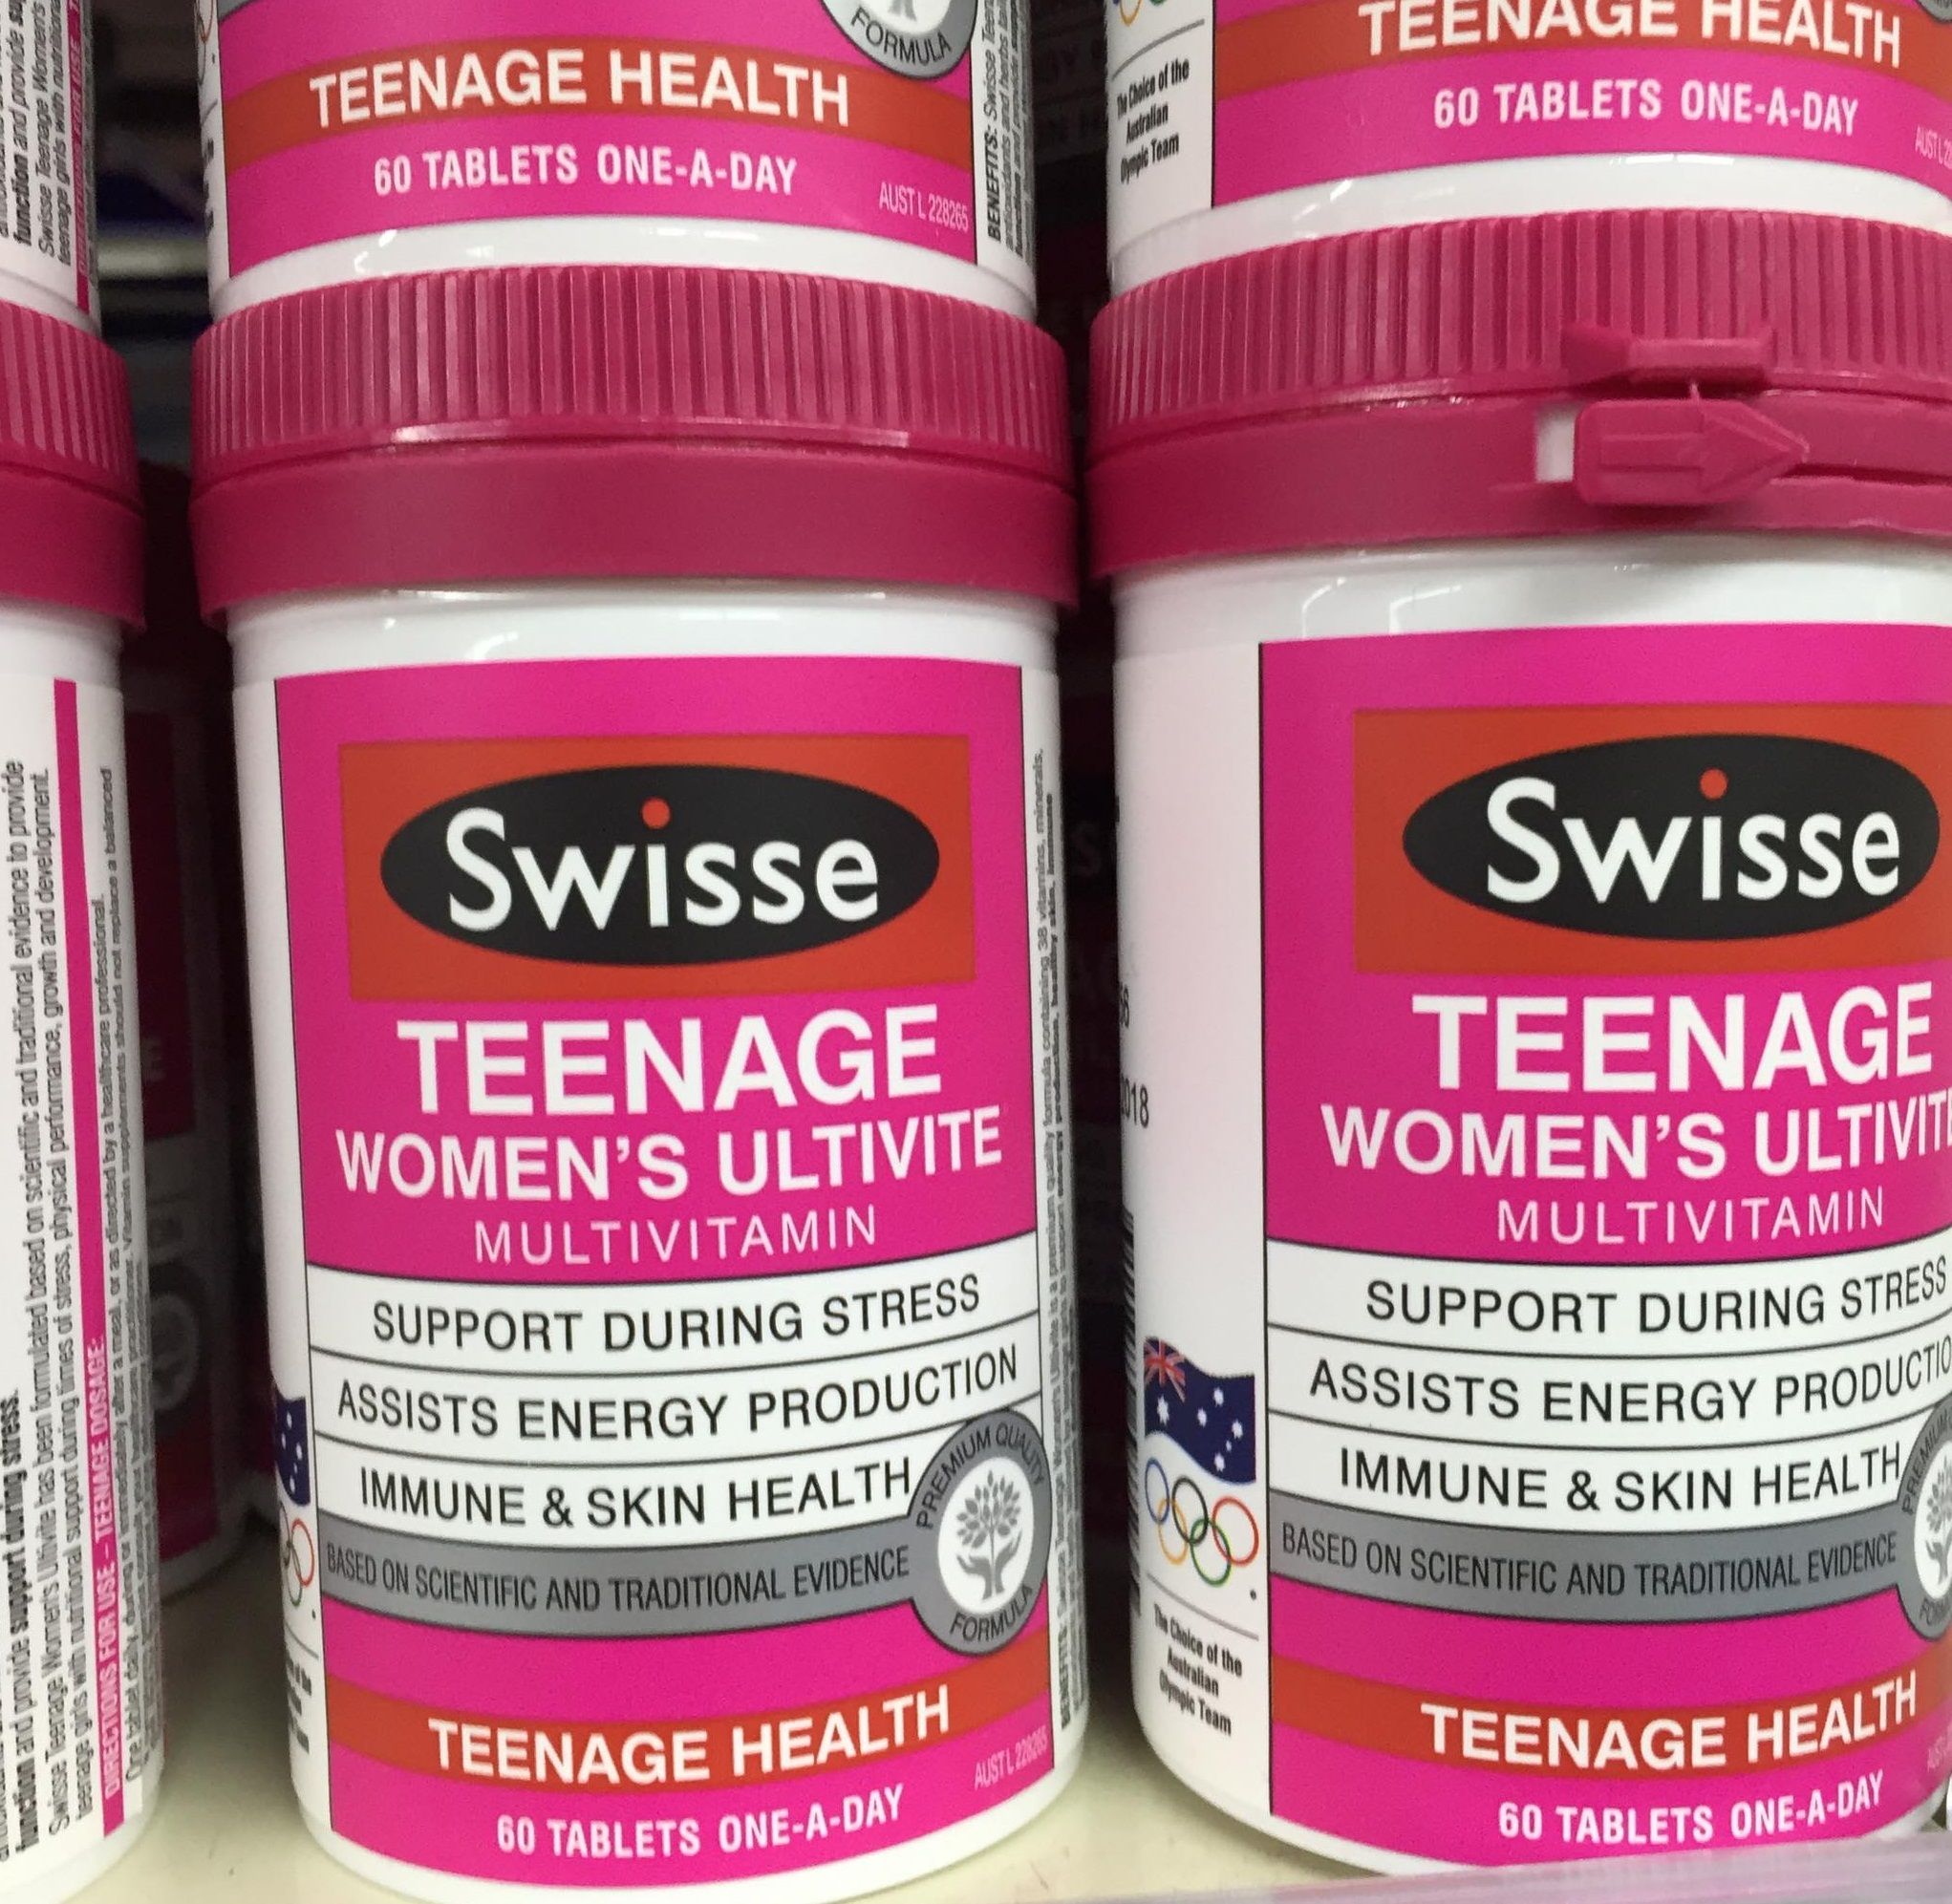 Swisse Teenage Women chứa 38 loại vitamin và khoáng chất, giúp đáp ứng nhu cầu dinh dưỡng, giúp duy trì sức khỏe cho nữ tuổi teen